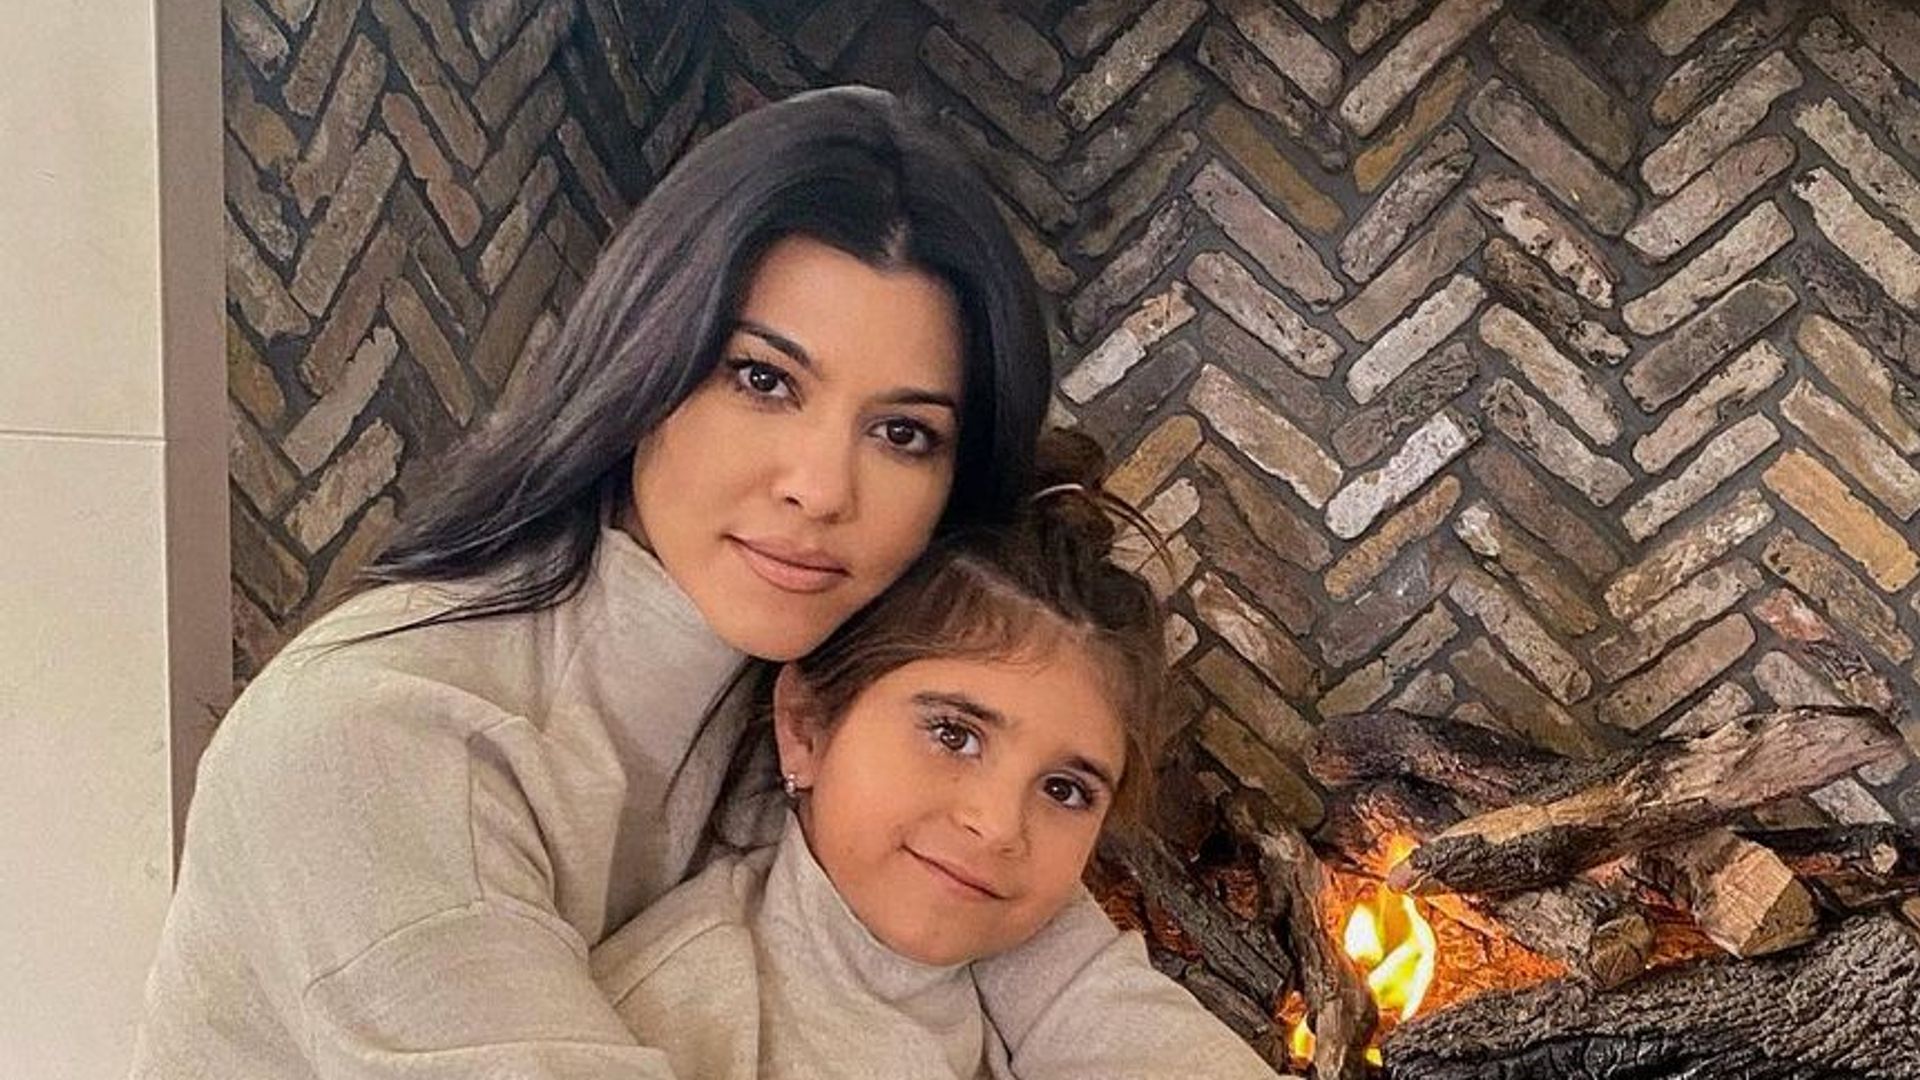 Kourtney Kardashian and daughter Penelope pose in matching pajamas